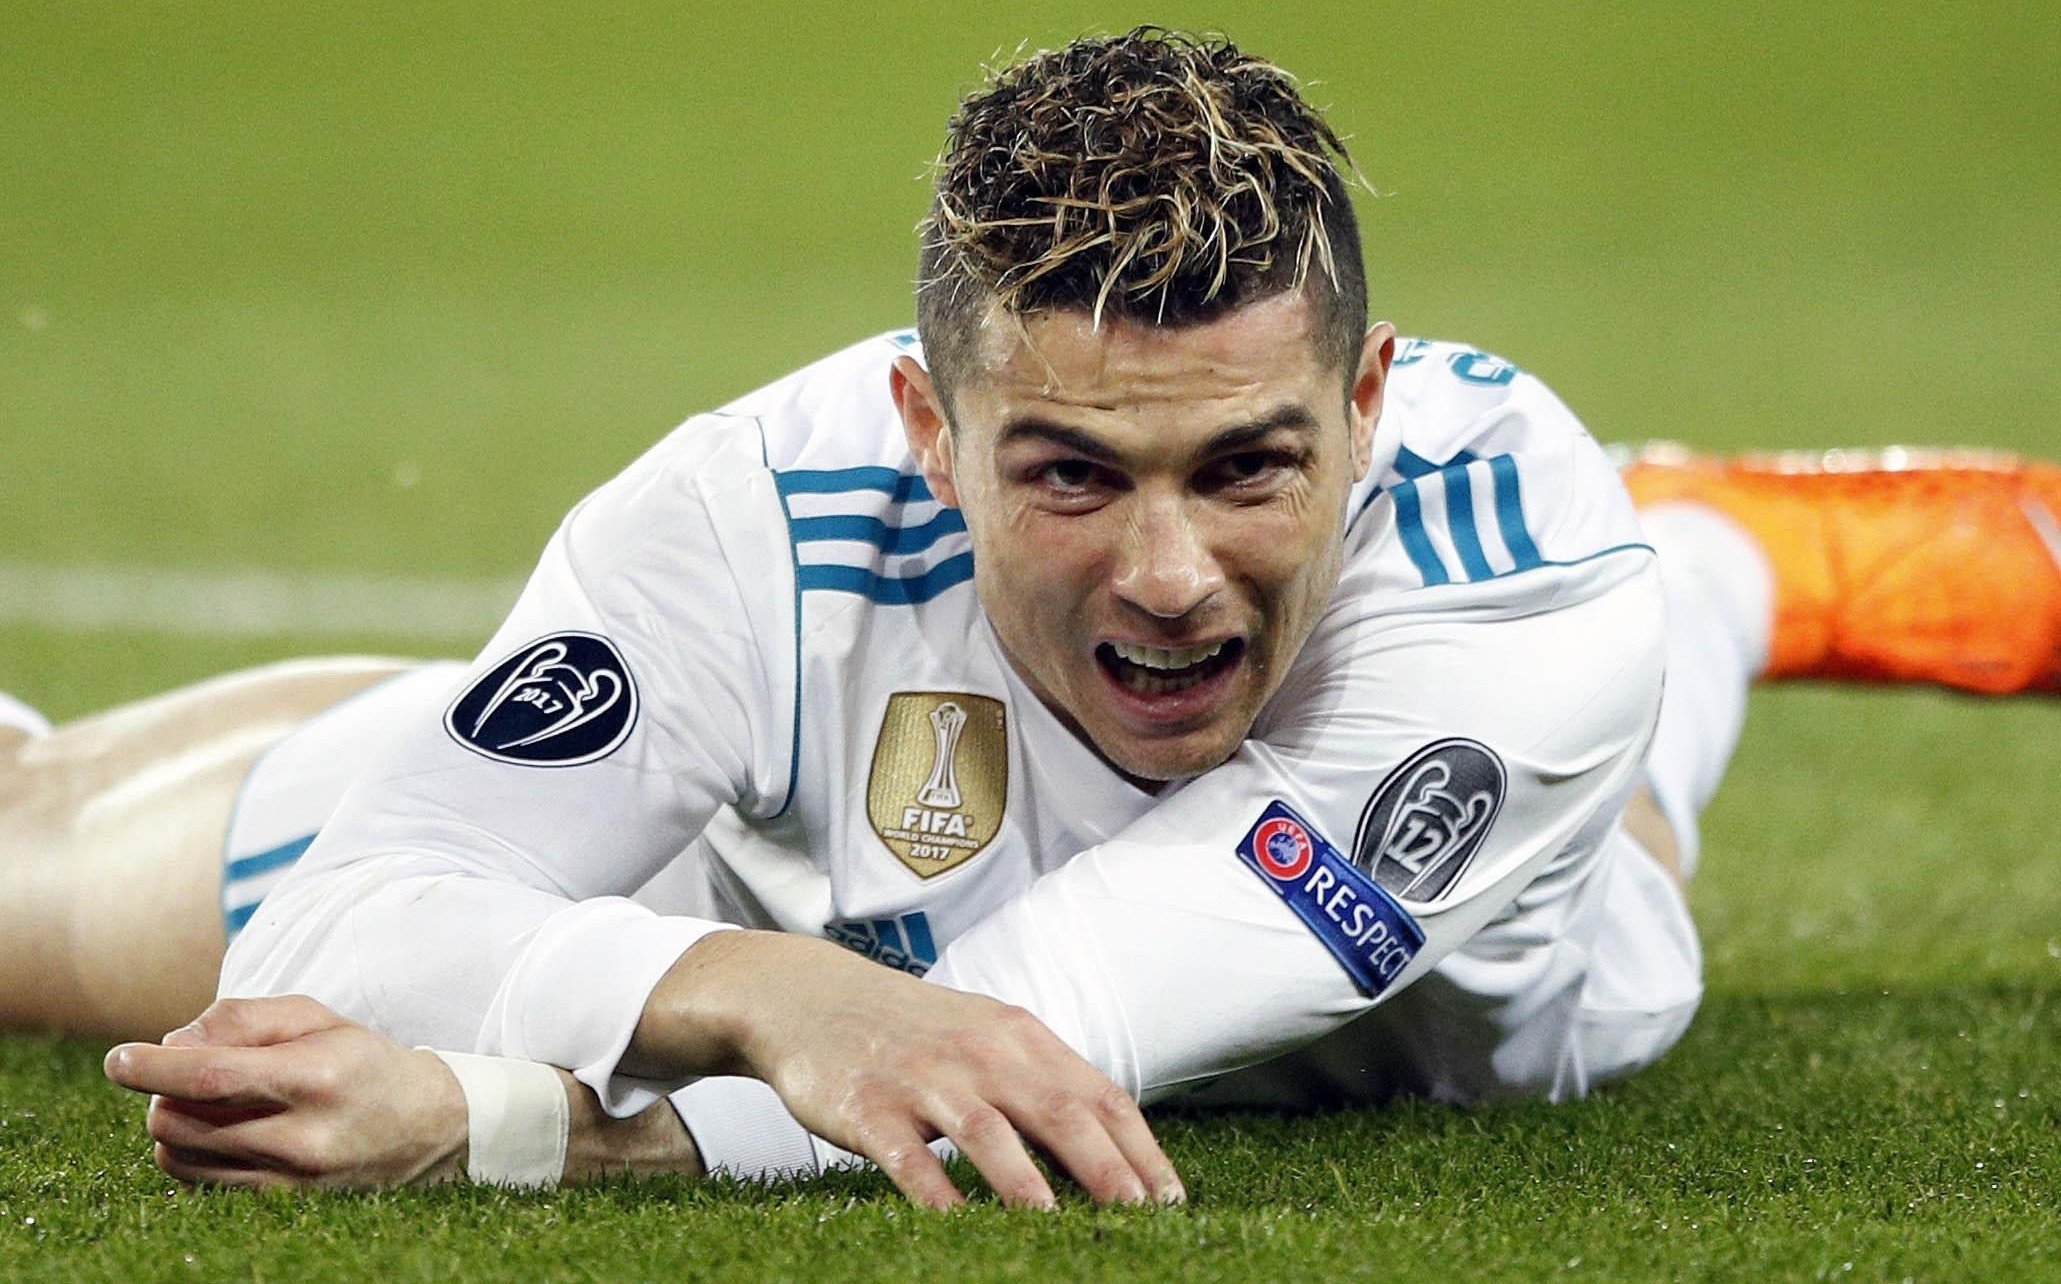 ŠPANCI NISKO UDARAJU! Ronaldo pred meč sa "furijom" dobio dve godine zatvora i plaća 19 miliona evra!